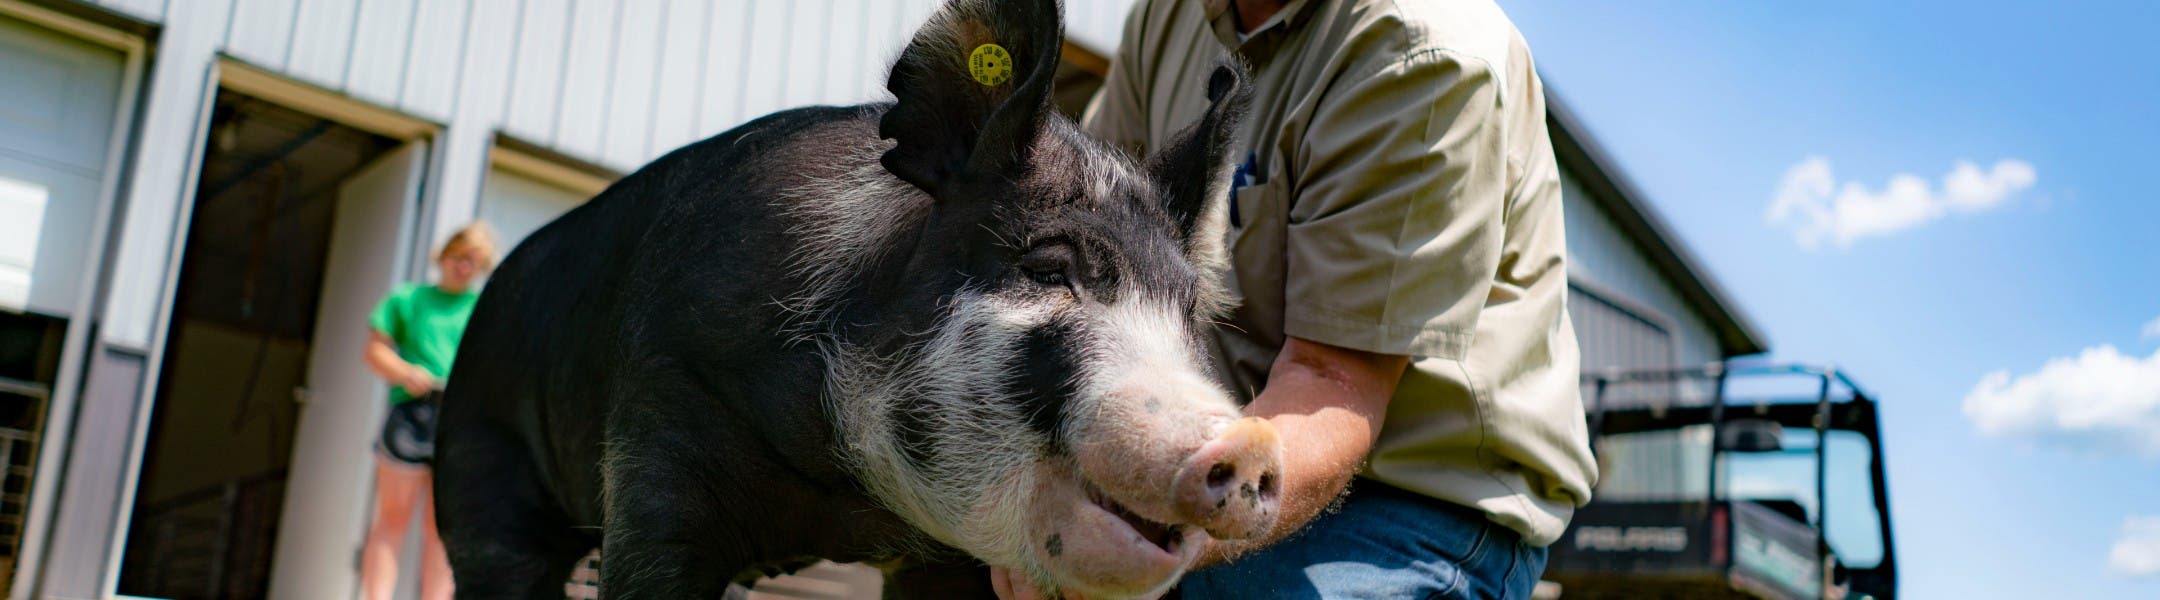 Farmer with a pig